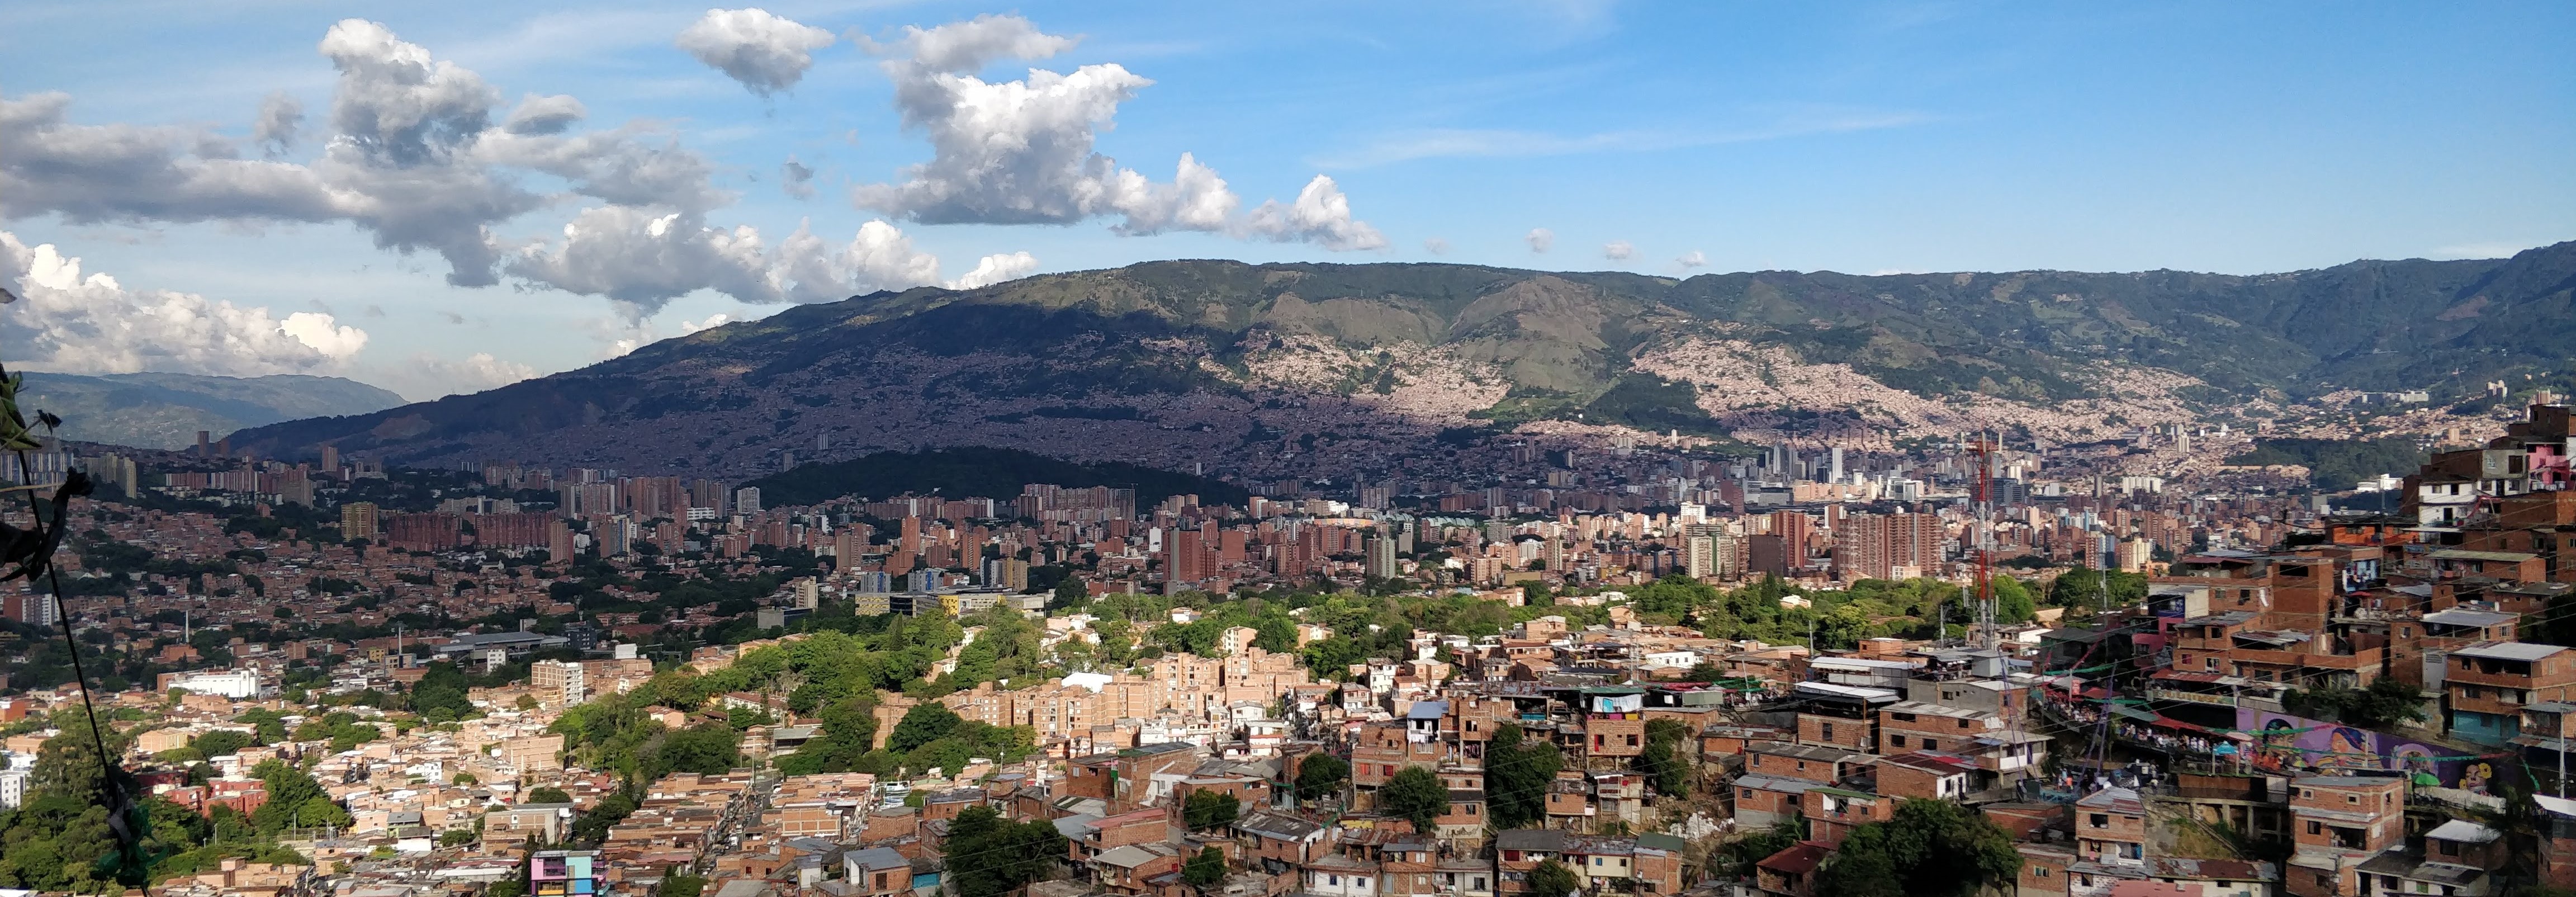 Medellin picture